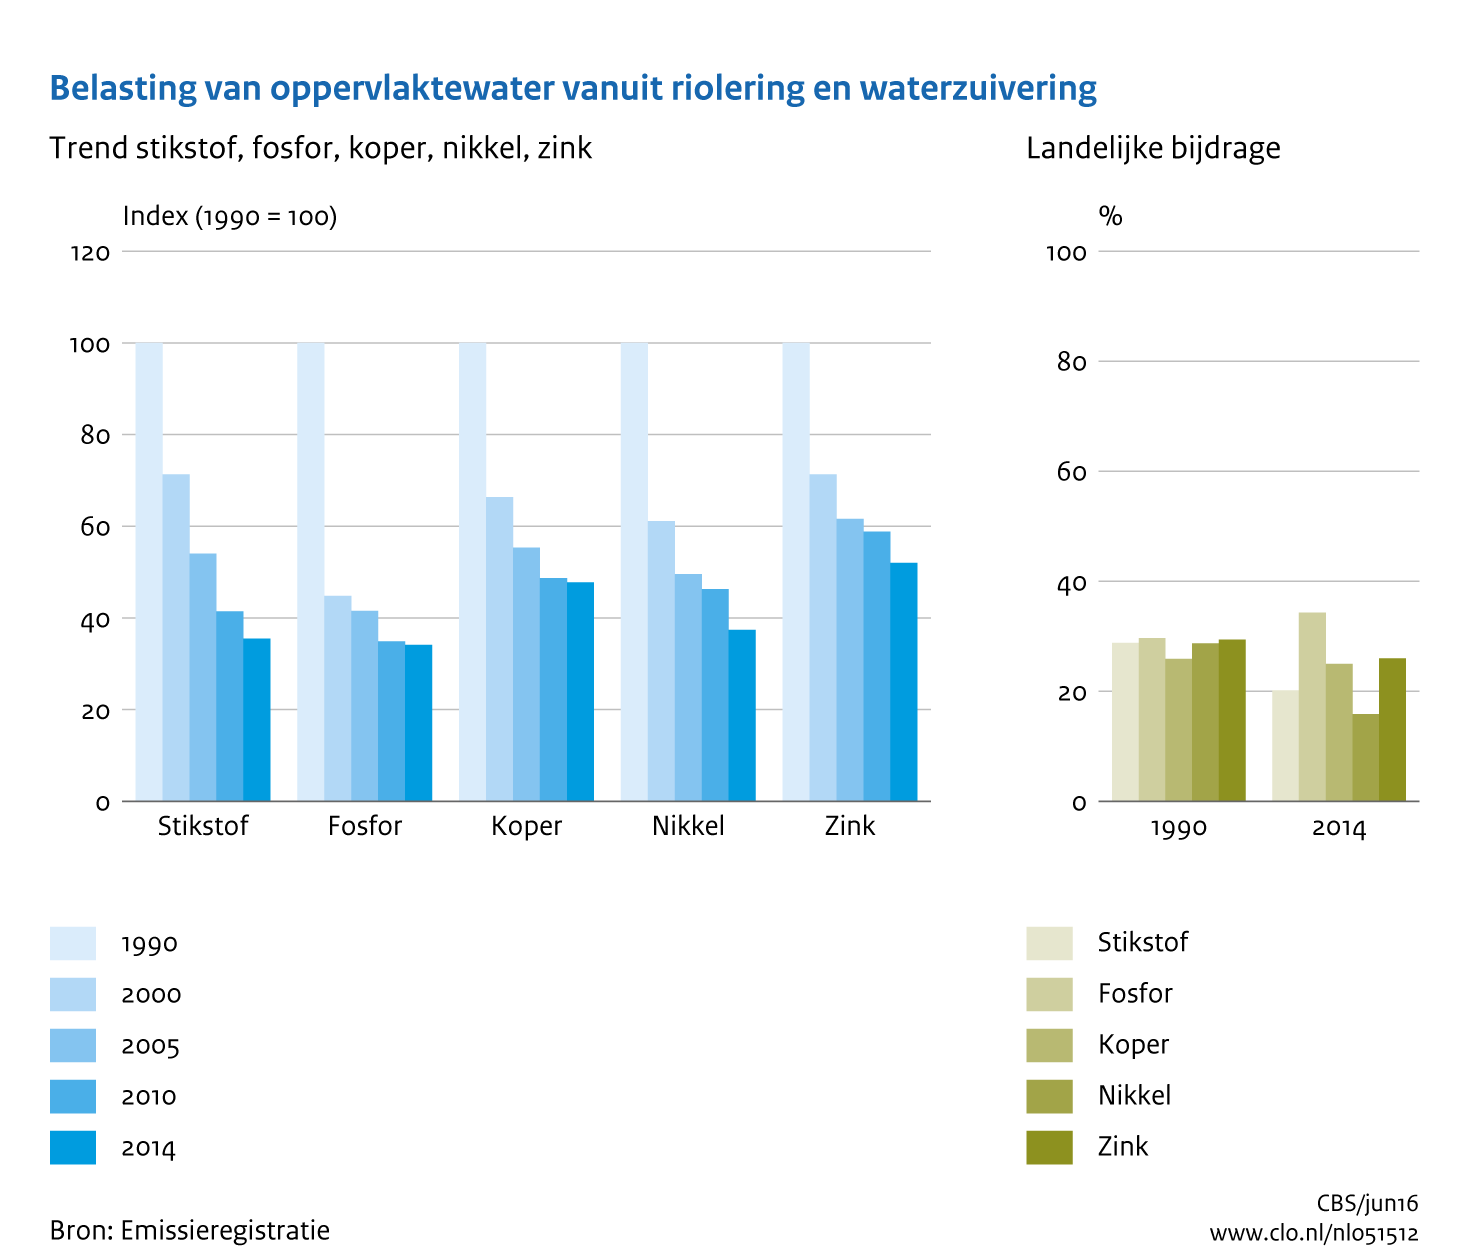 Figuur Belasting oppervlaktewater vanuit riolering en rioolwaterzuivering met stikstof, fosfaat, nikkel en zink. In de rest van de tekst wordt deze figuur uitgebreider uitgelegd.